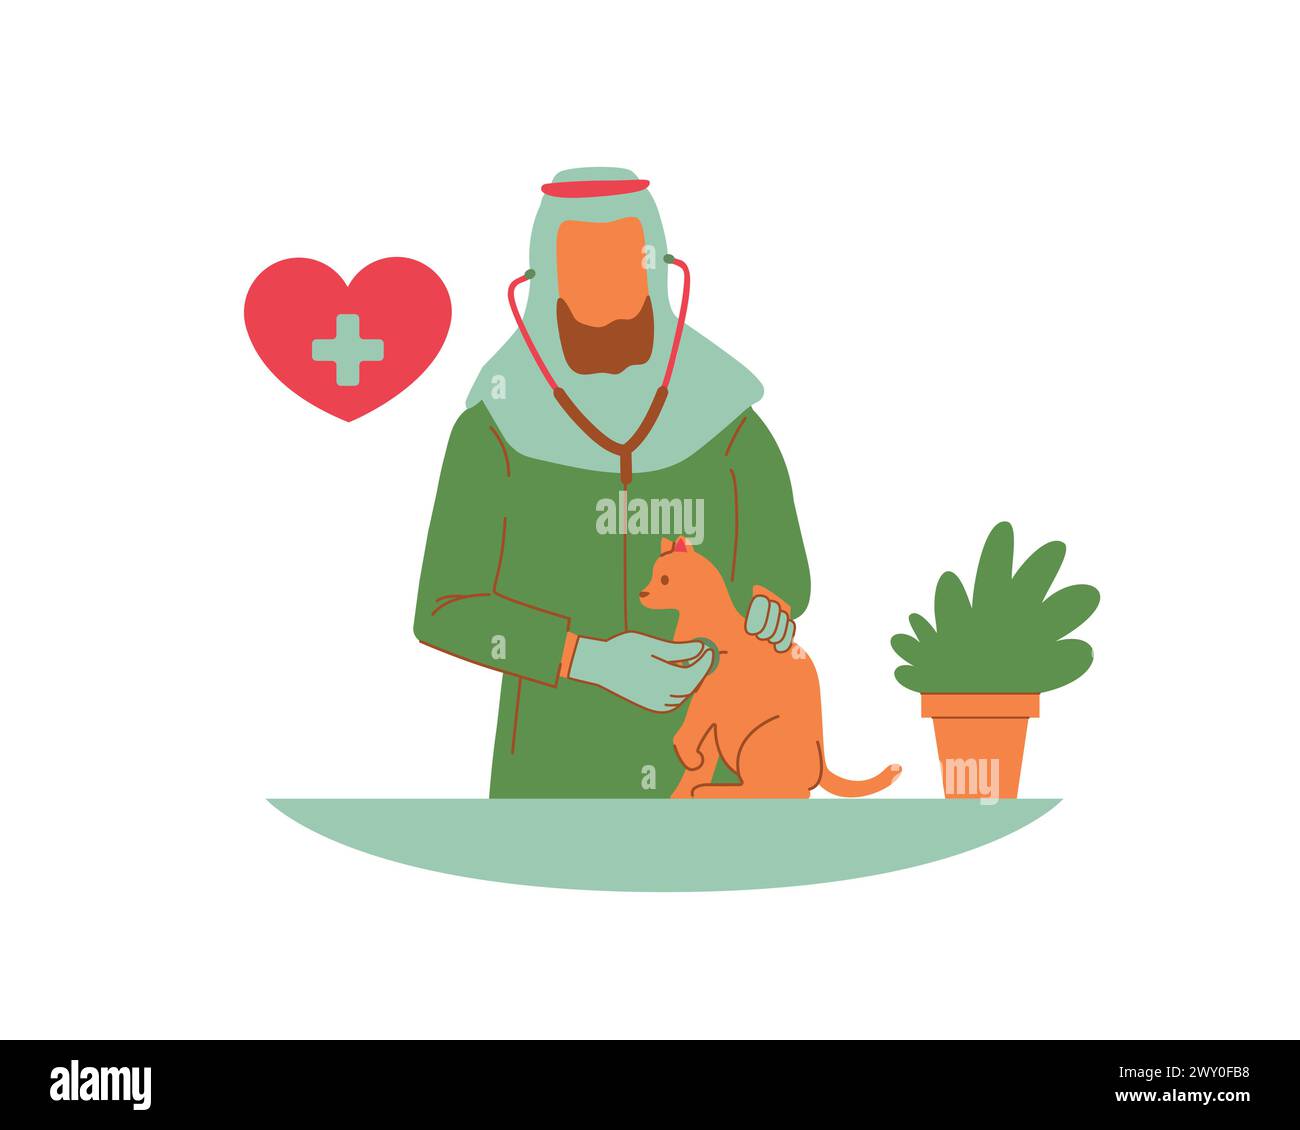 I veterinari musulmani arabi si prendono cura di un gatto e di un'icona rossa a forma di cuore. La cura degli animali promuove e adotta il concetto e il design Illustrazione Vettoriale